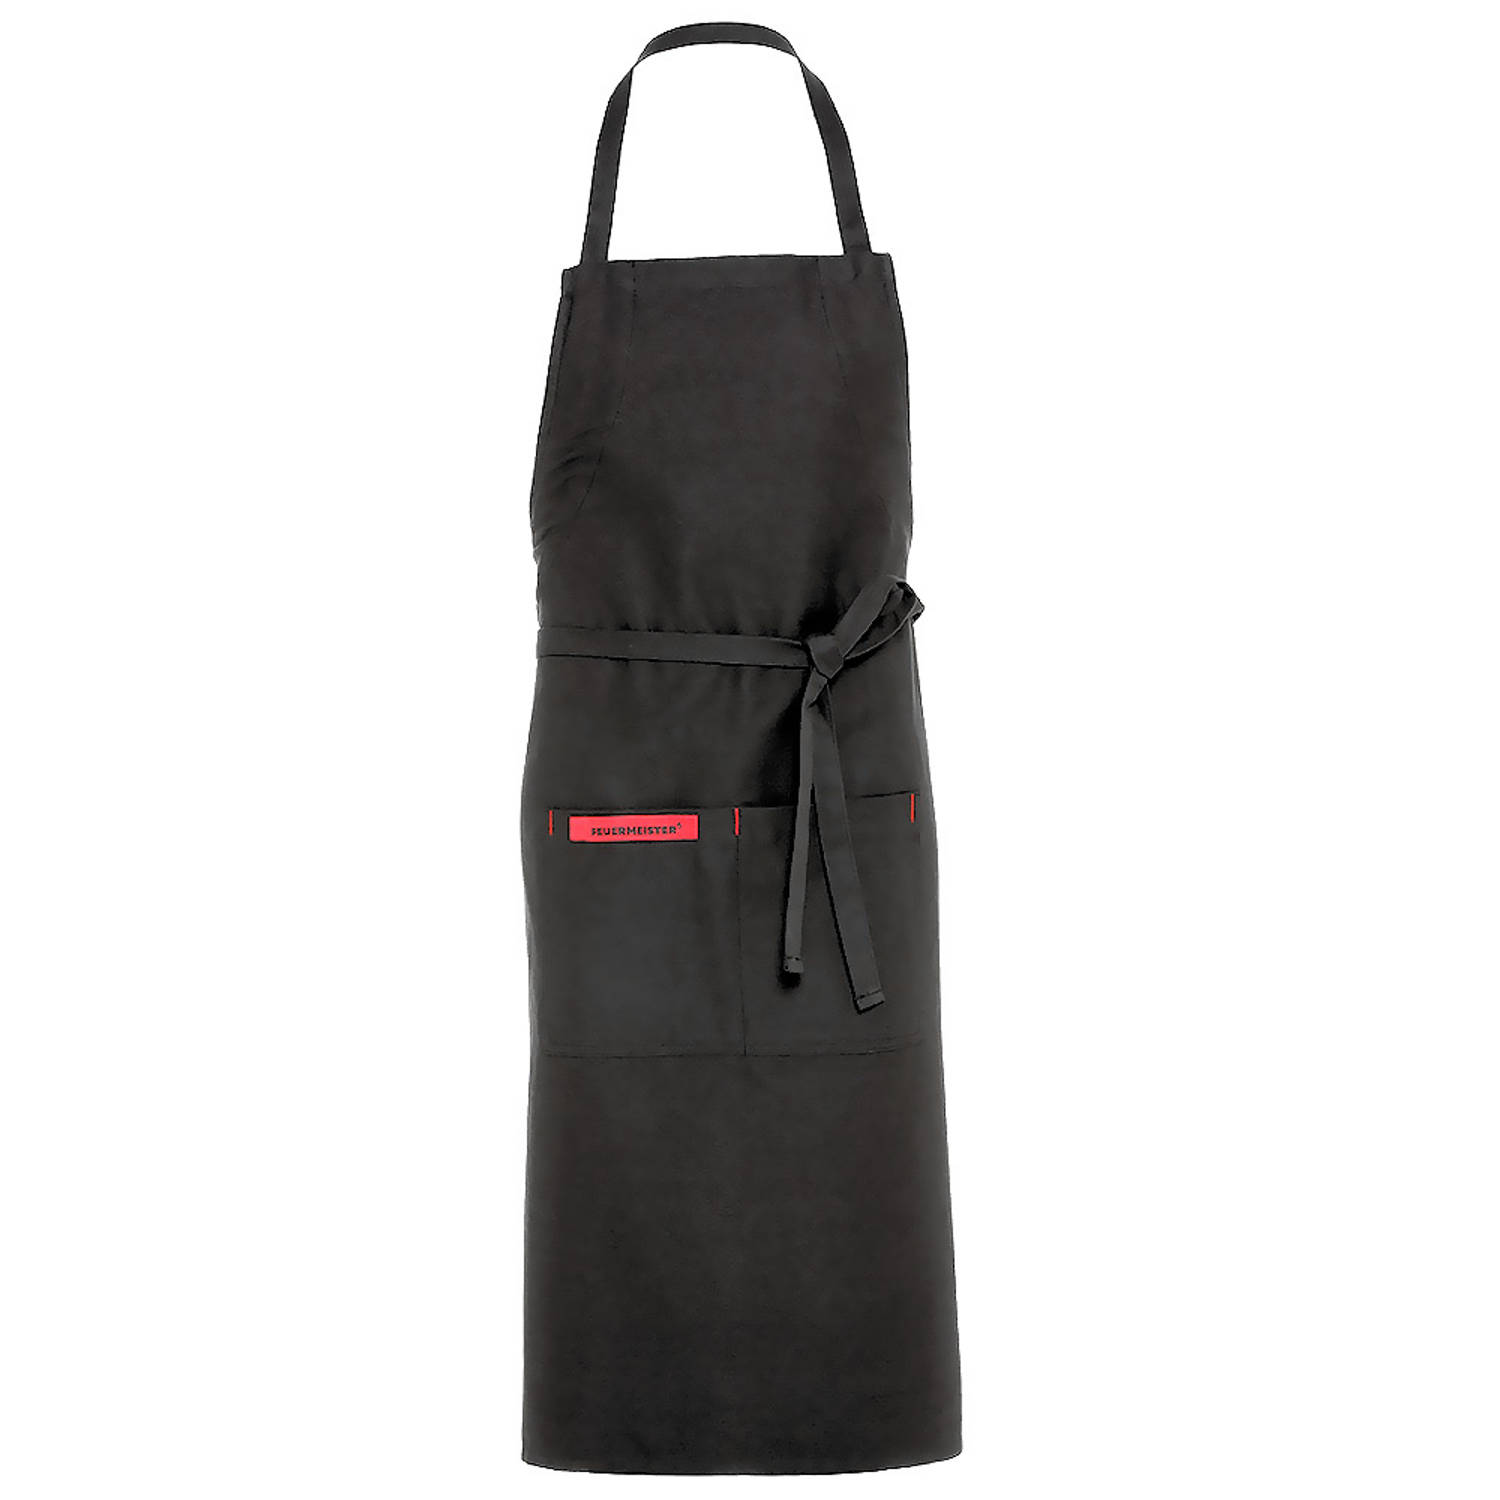 Feuermeister BBQ keukenschort Premium met embleem zwart/rood